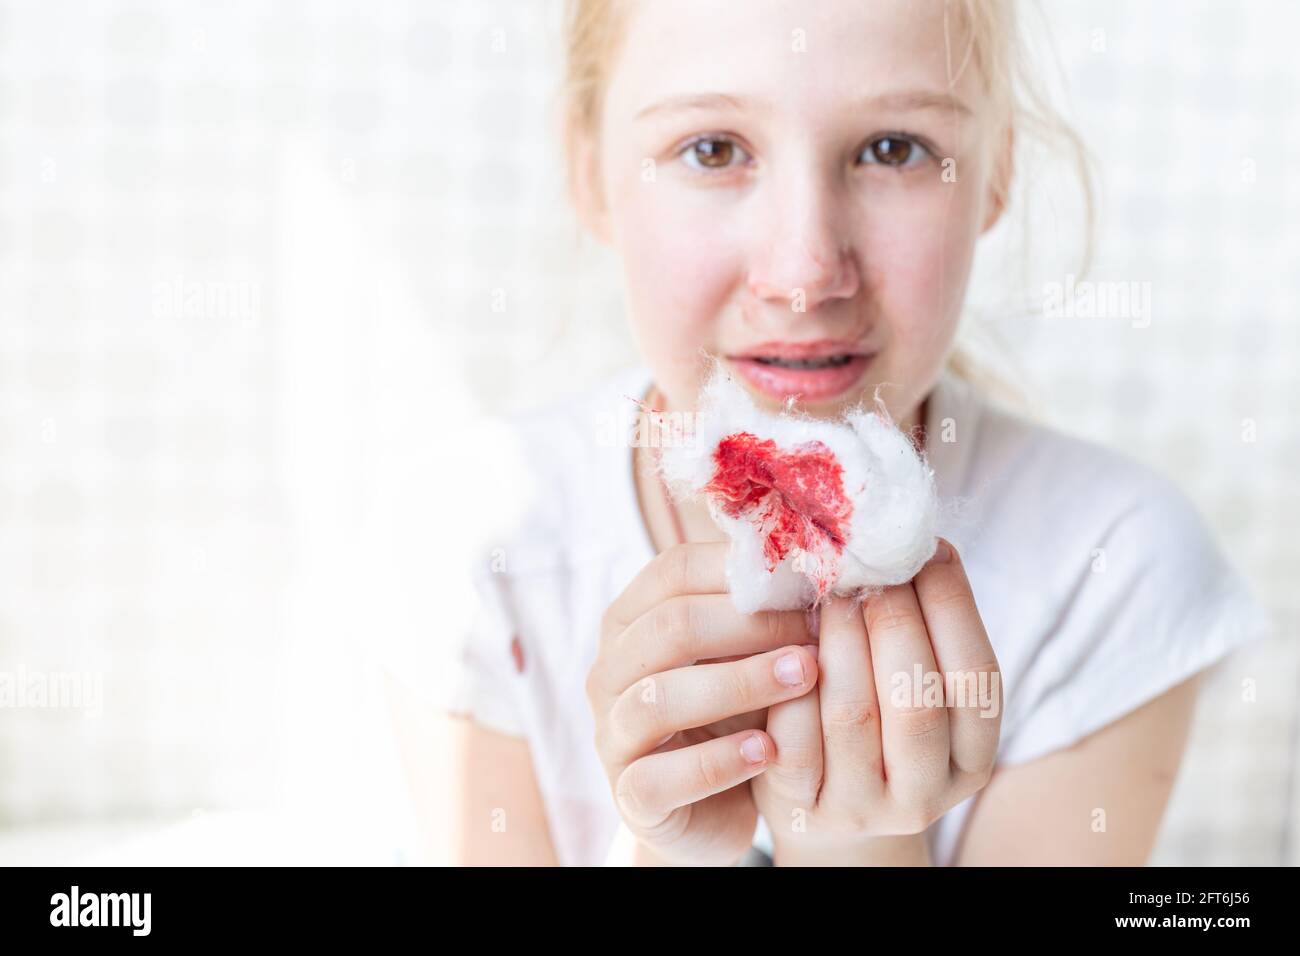 La laine de coton sanglante dans les mains d'un enfant. Épistaxis, symptôme de la maladie, traumatisme. Banque D'Images